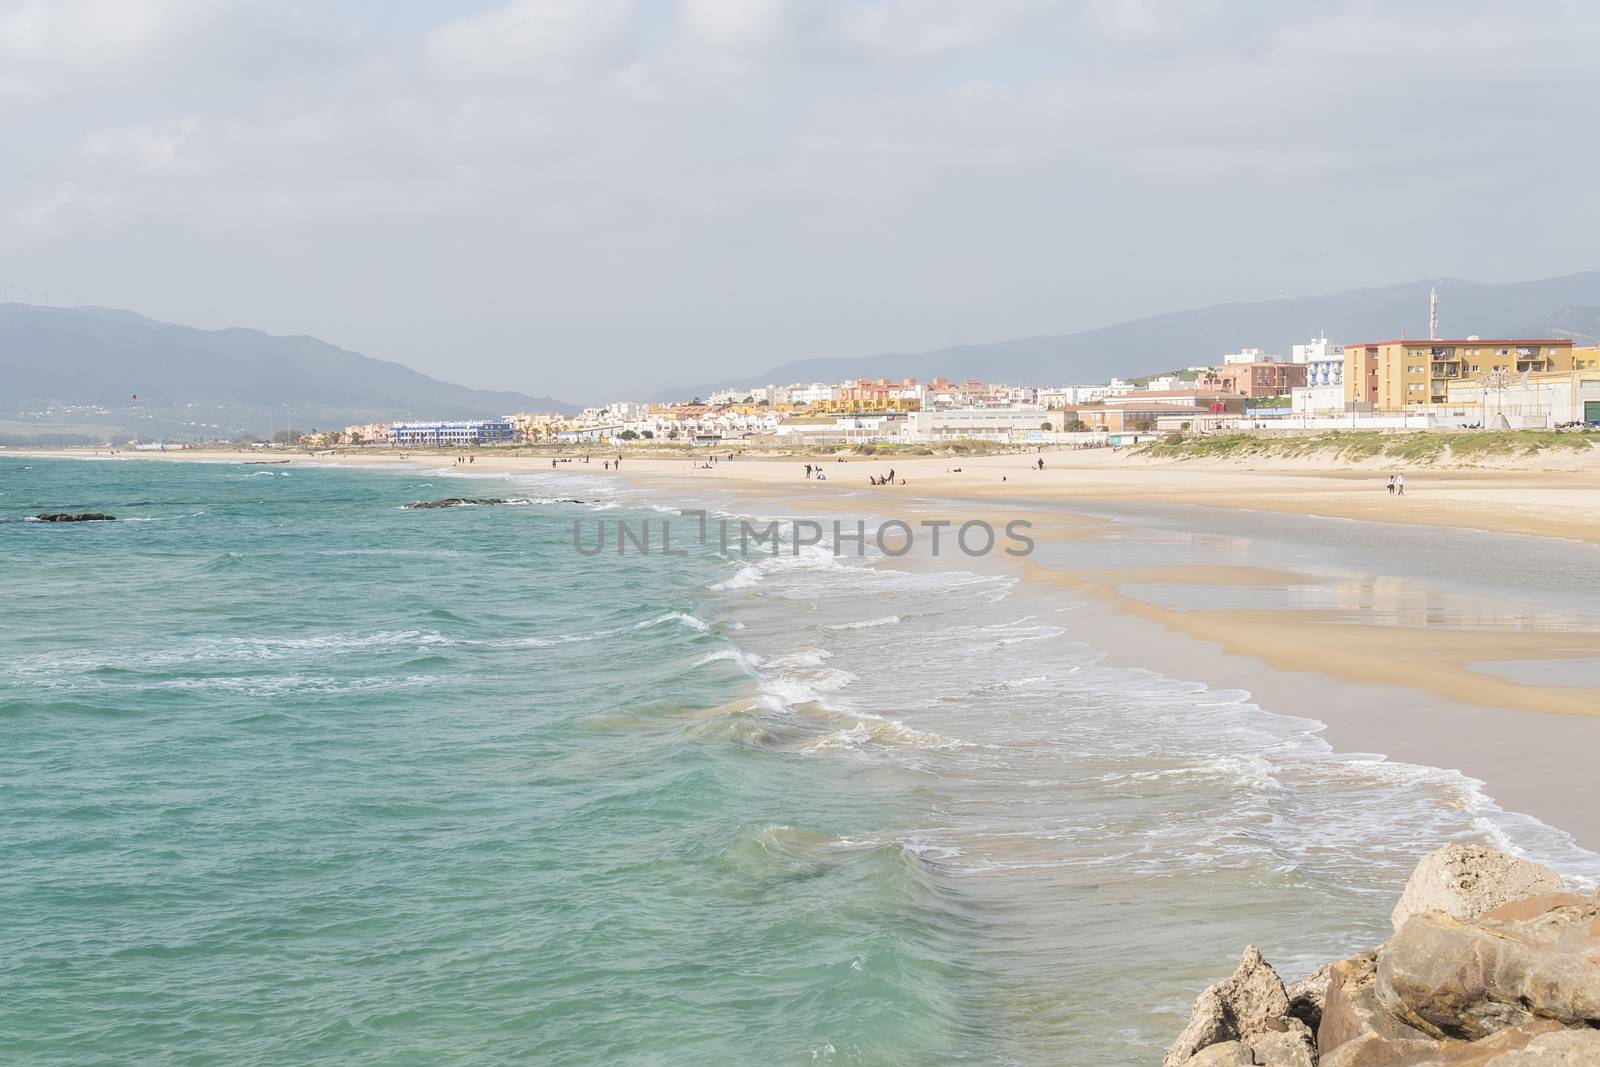 Tarifa beach, Cadiz, Spain